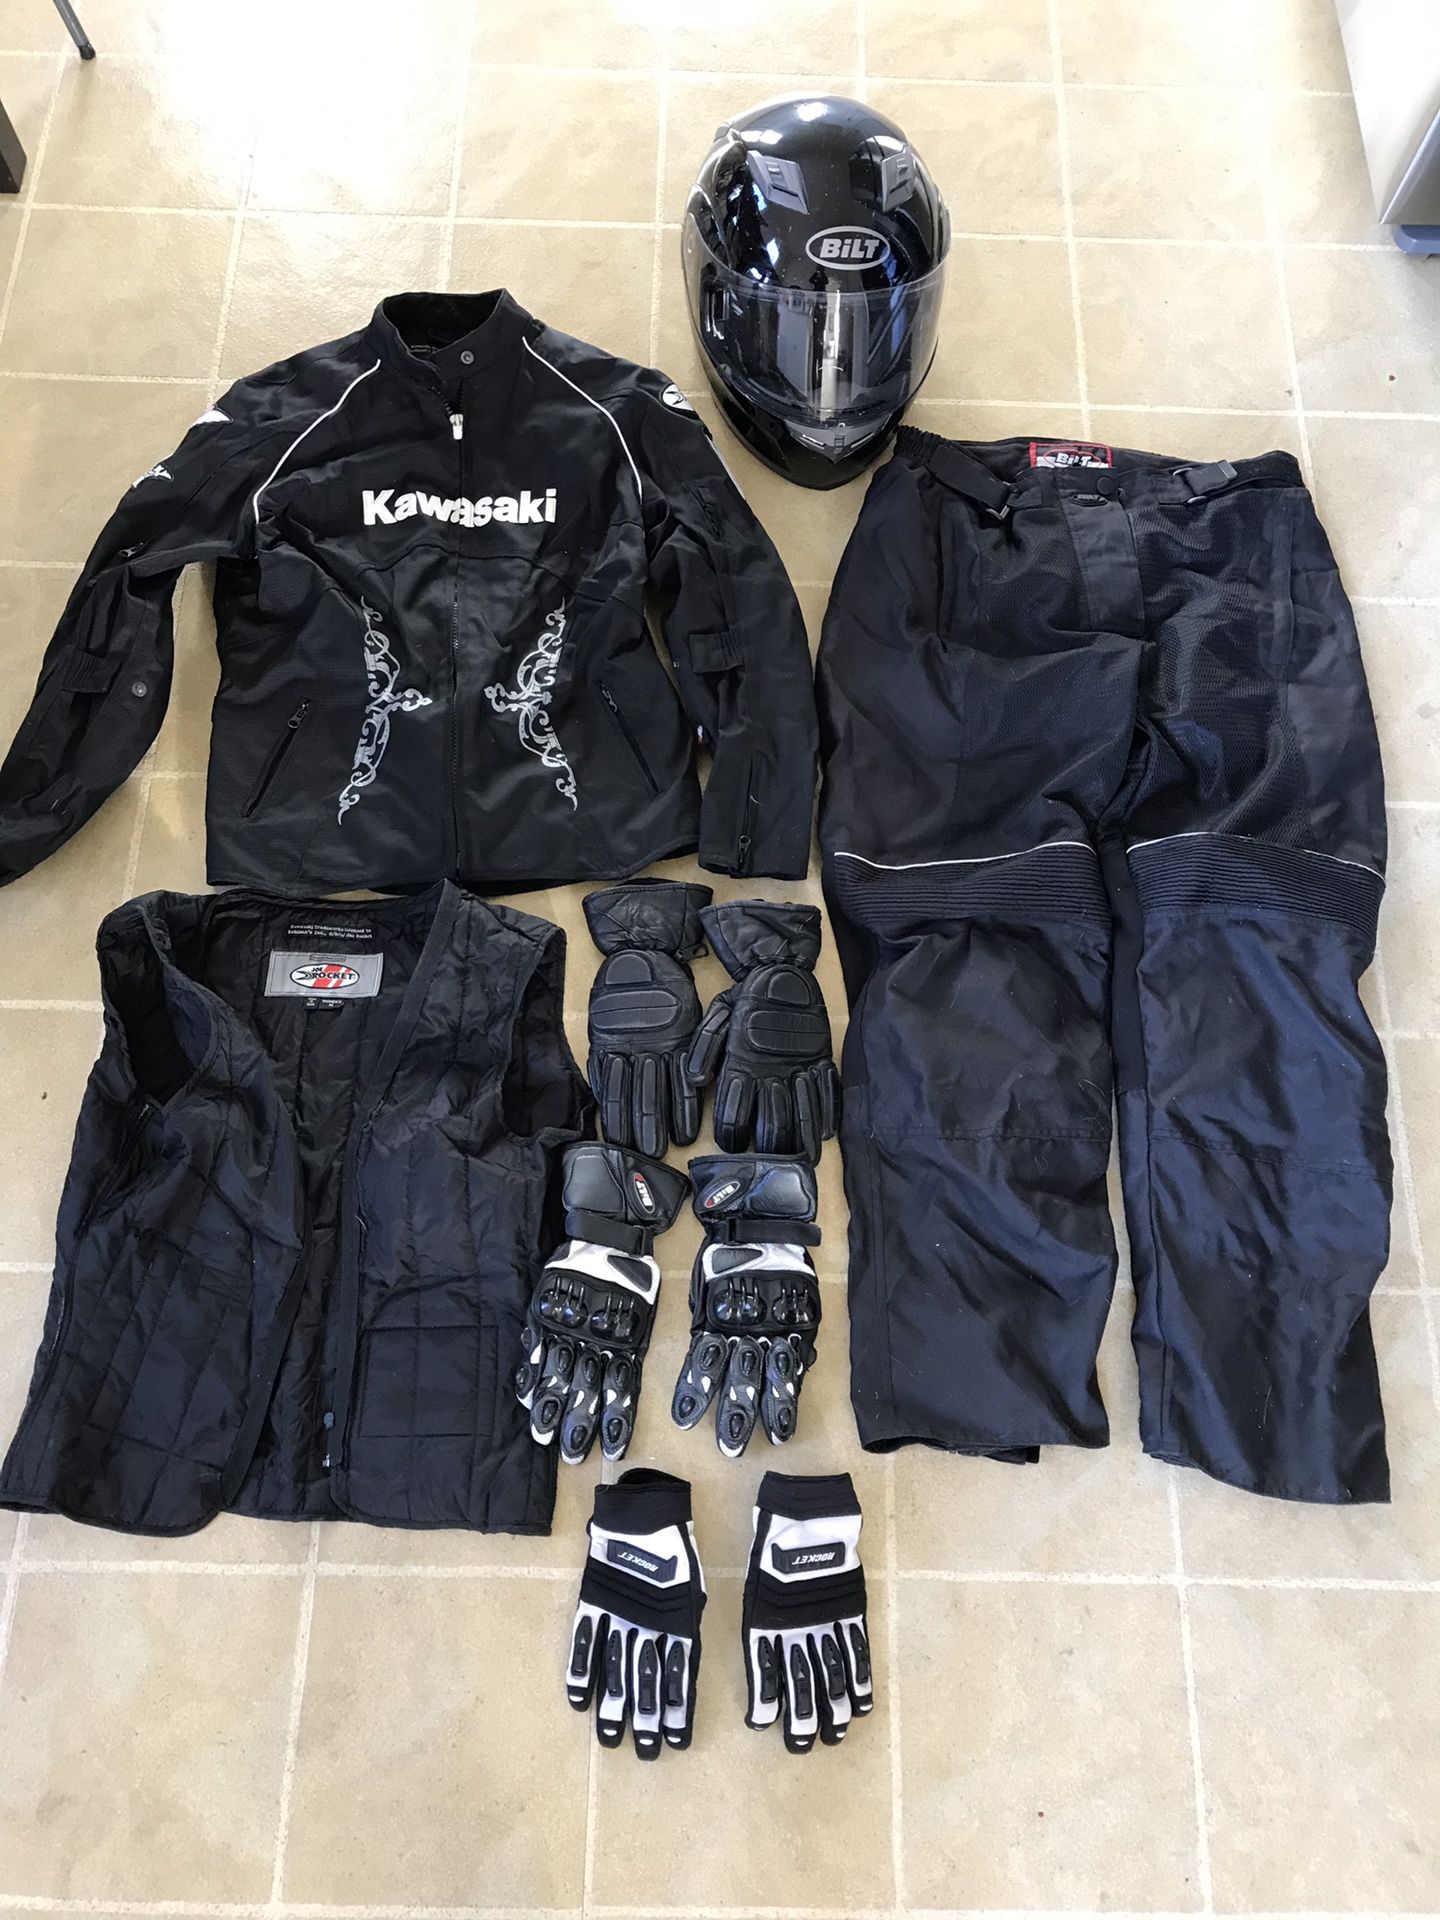 Women’s motorcycle gear